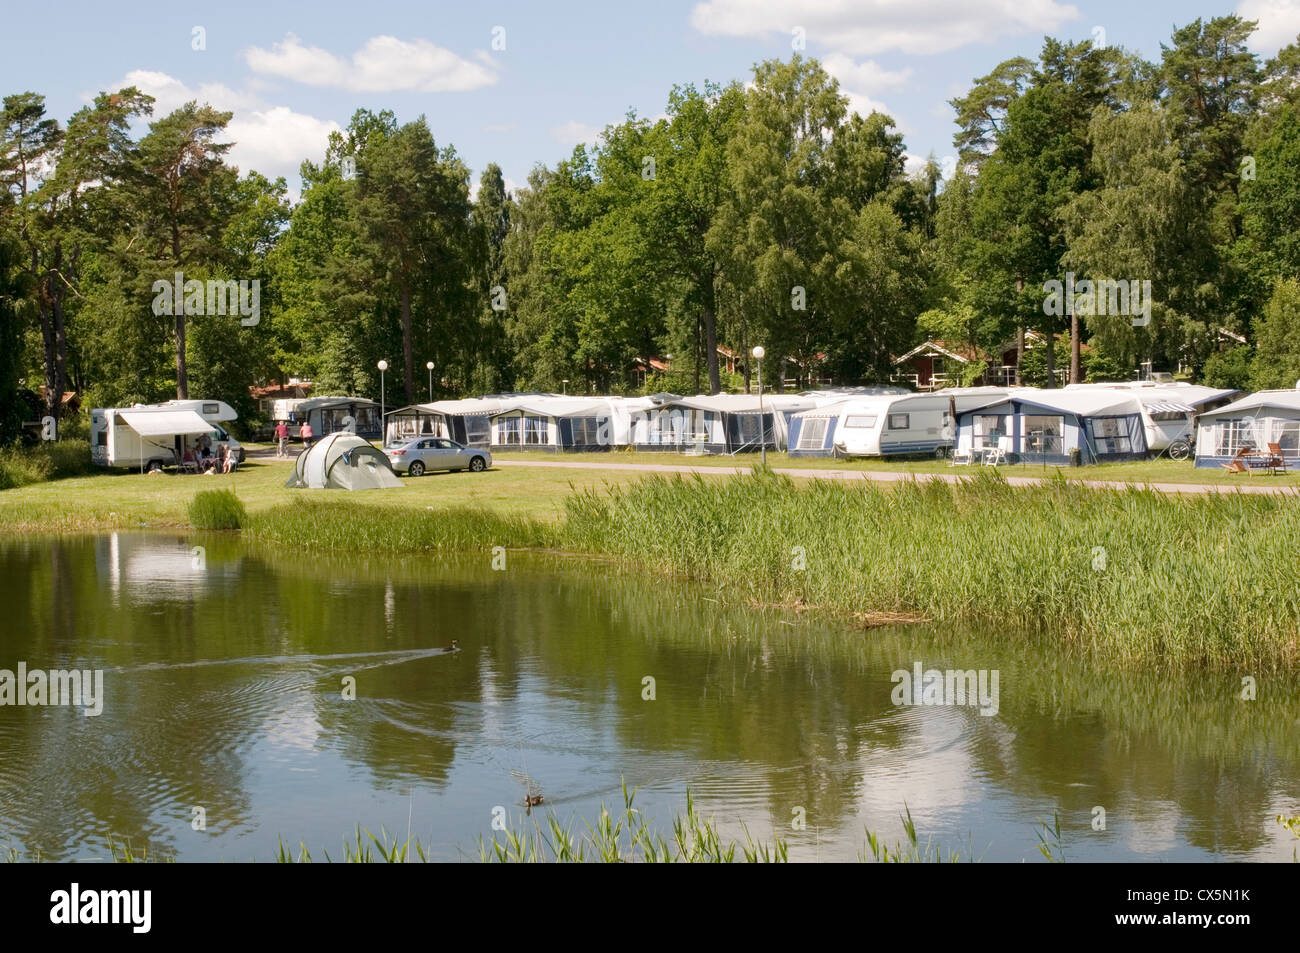 swedish campsite camping in sweden tent tents caravan caravans ...